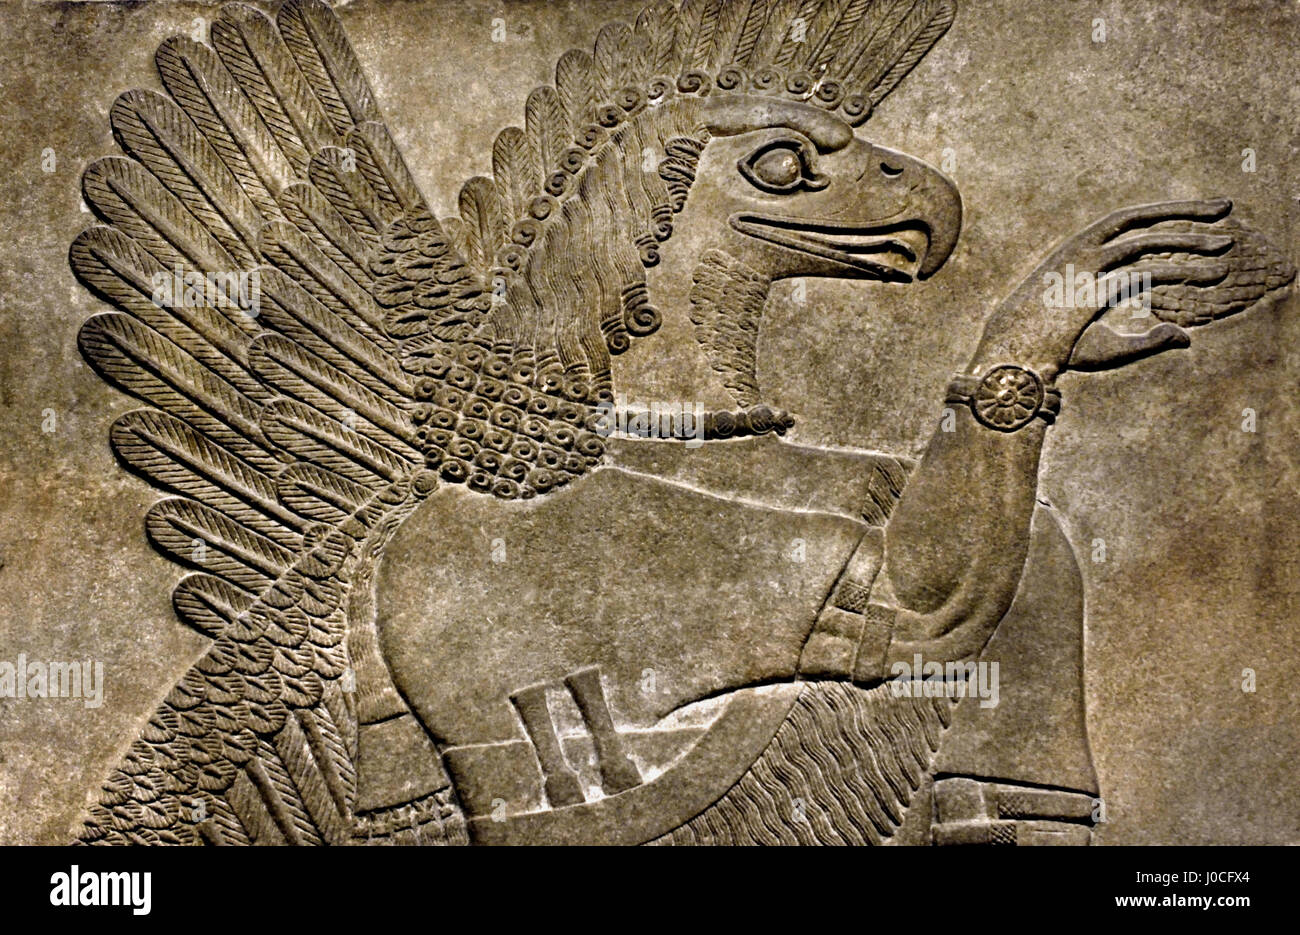 Esprit protecteur 865 - 860 av. du Palais Royal d'Assurnazirpal II Nimrud 883-859 av. J.-C. en Mésopotamie Iraq Kalhu Assyrie Banque D'Images